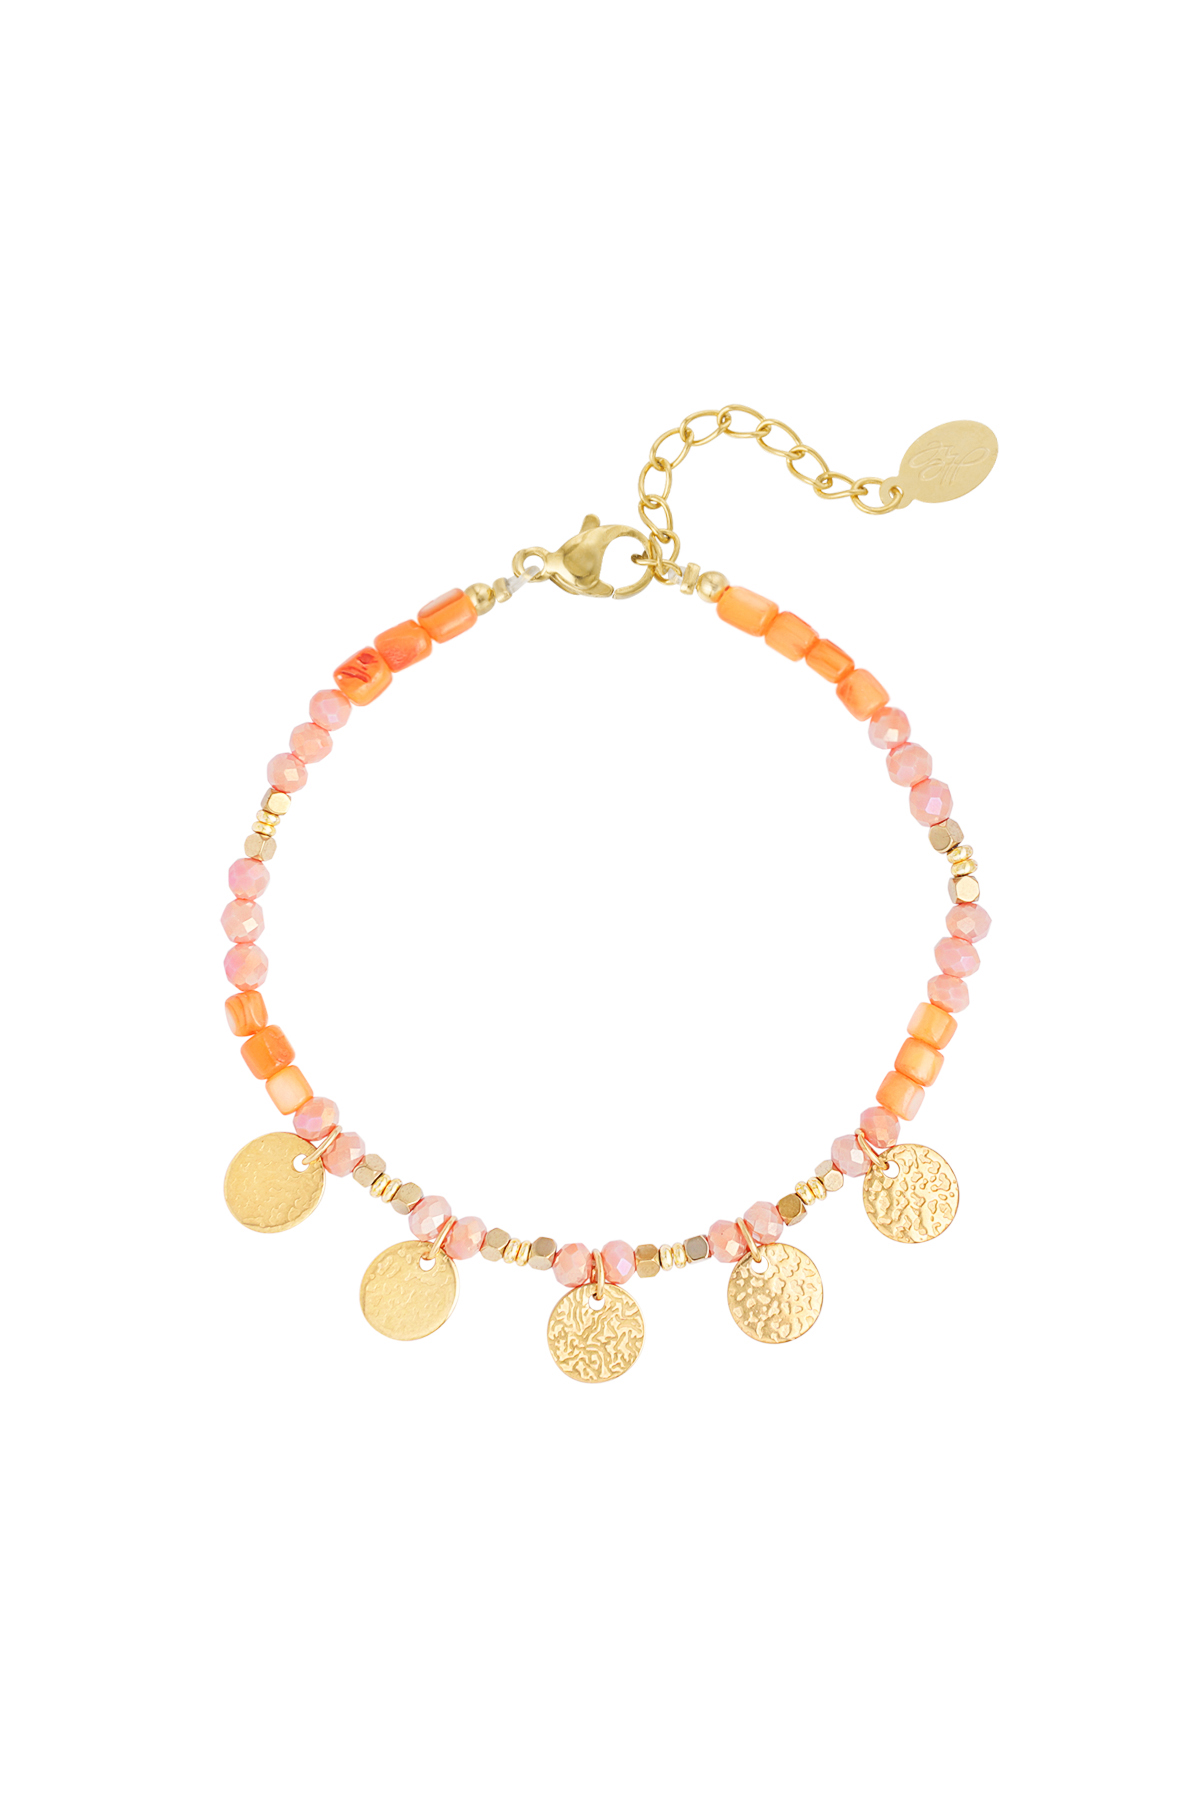 Bracelet free your mind - orange gold